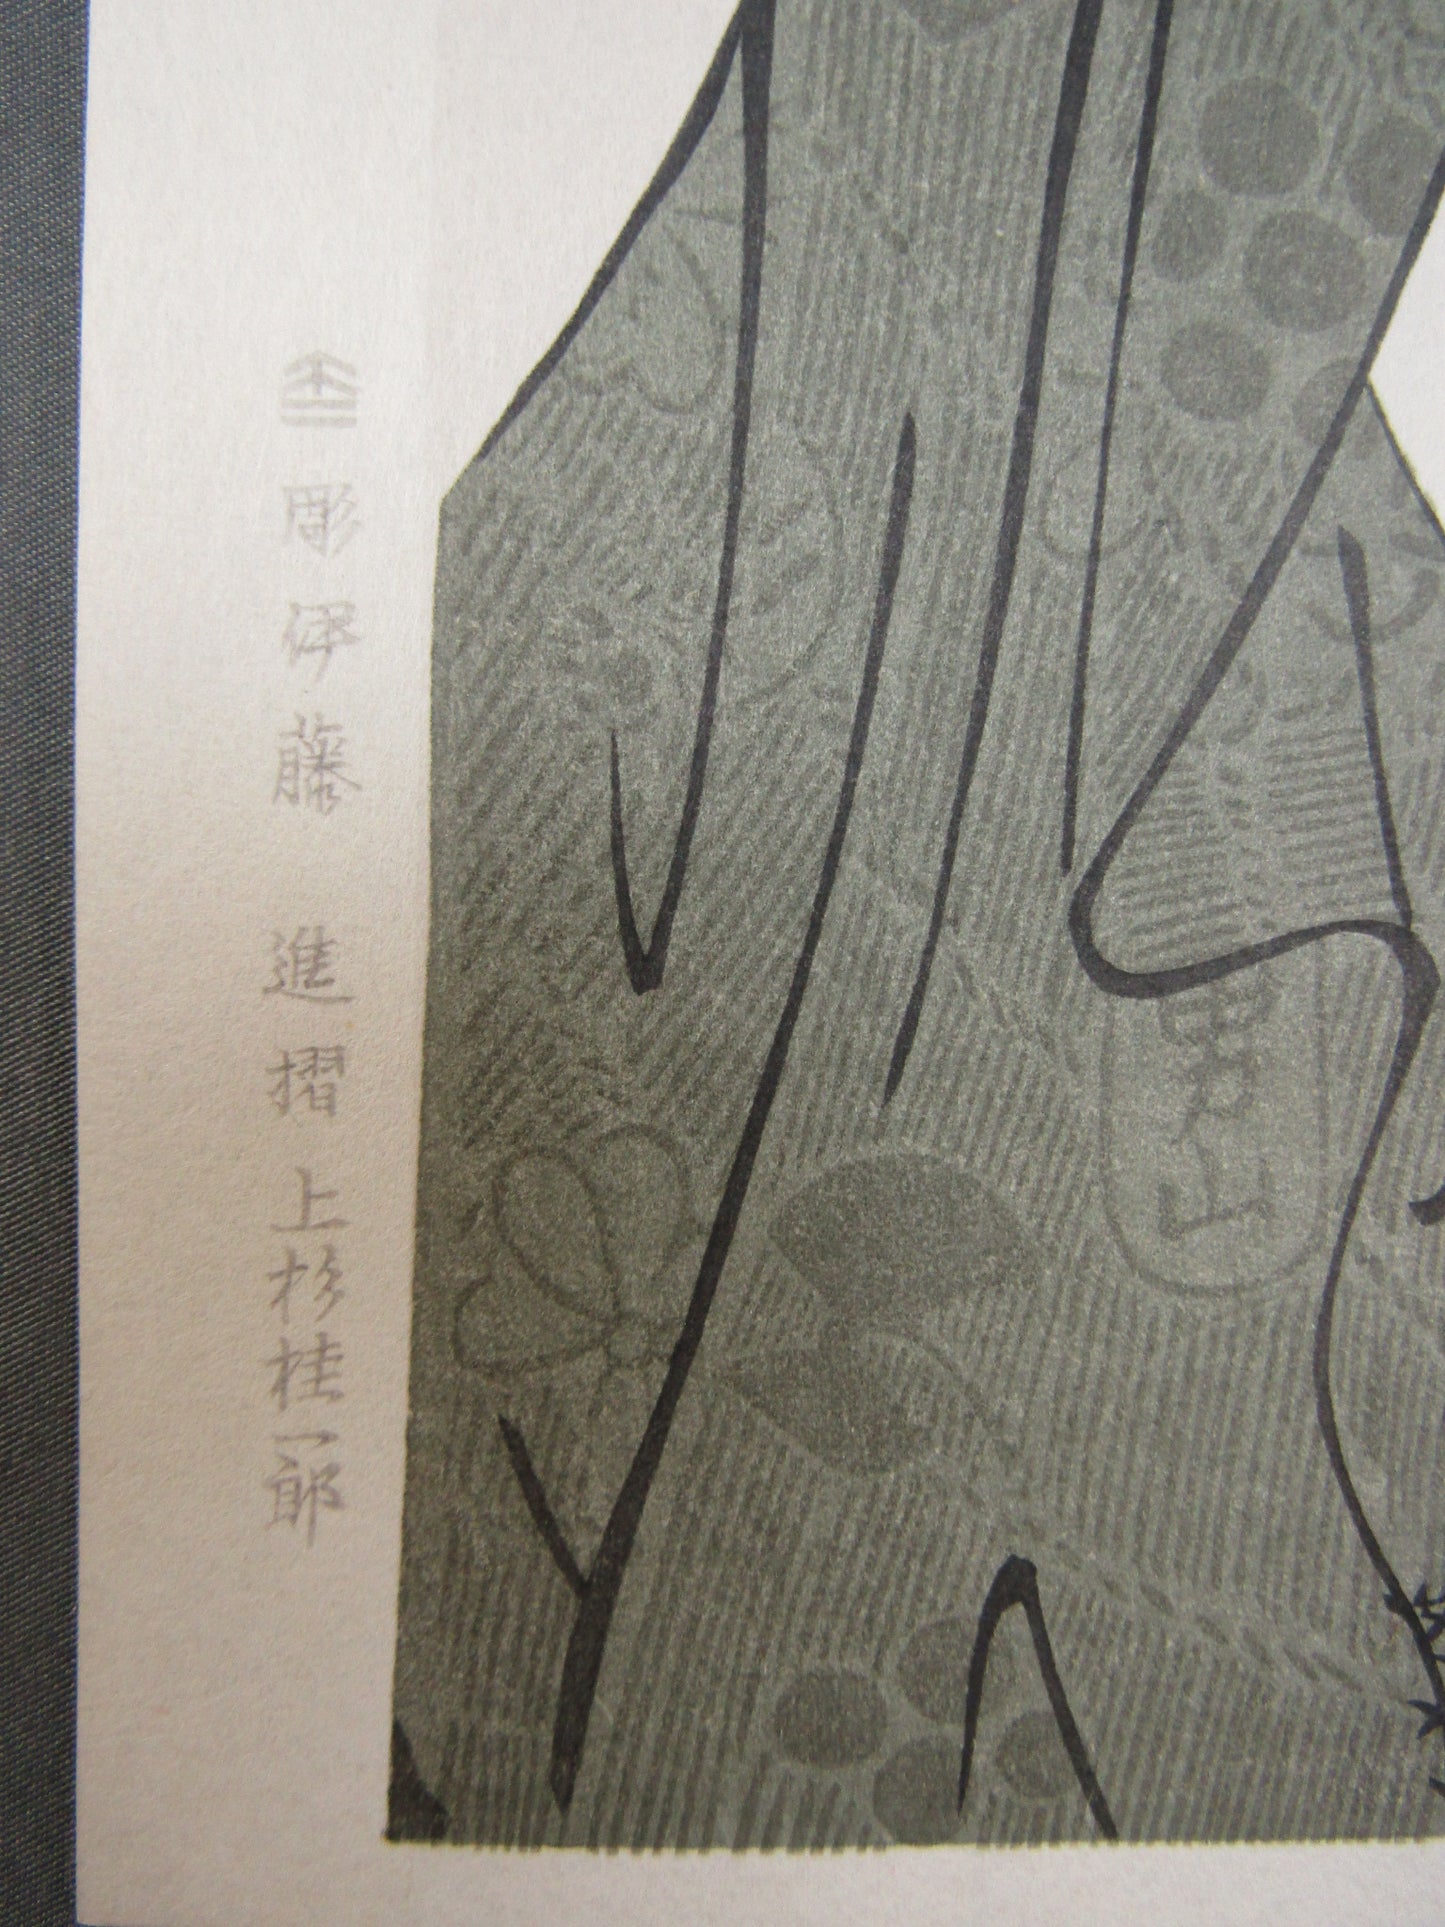 "Bakuren" Utamaro Woodblock print